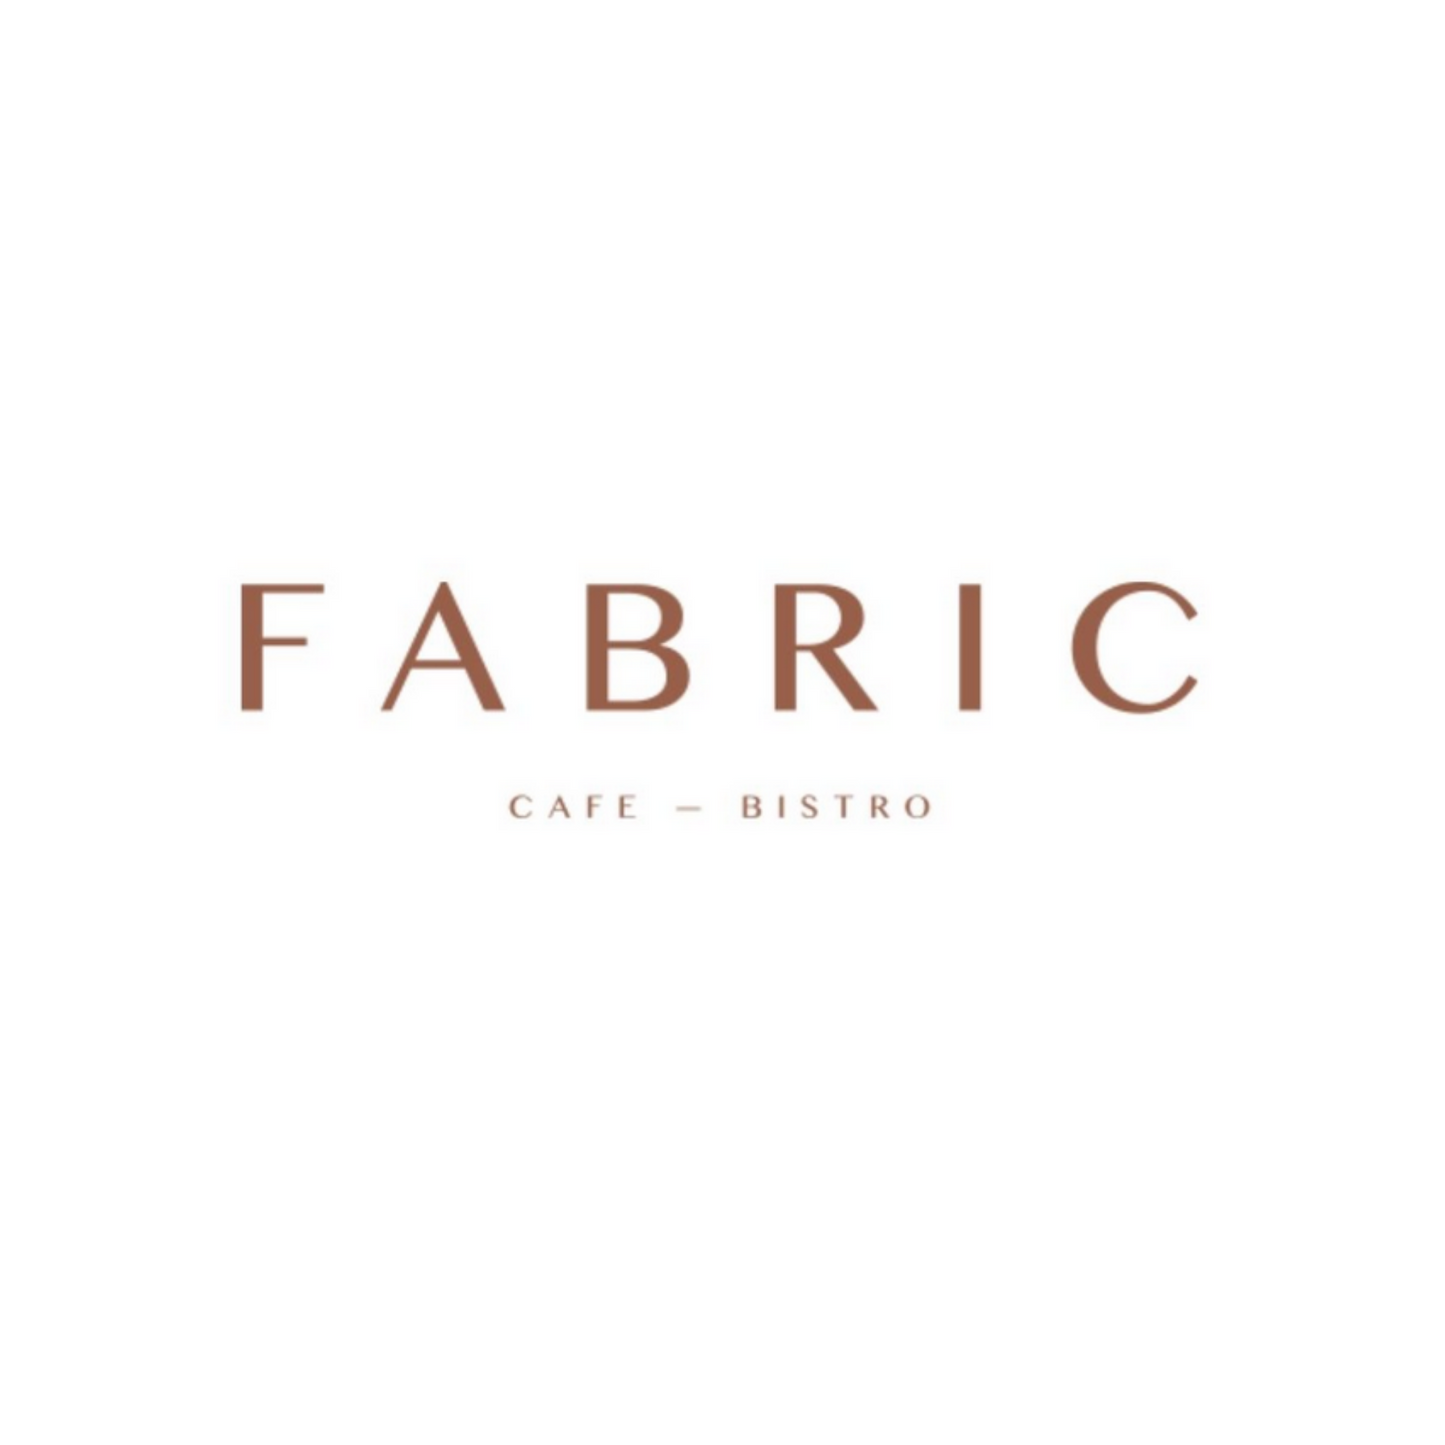 Fabric Cafe Bistro restaurant voucher